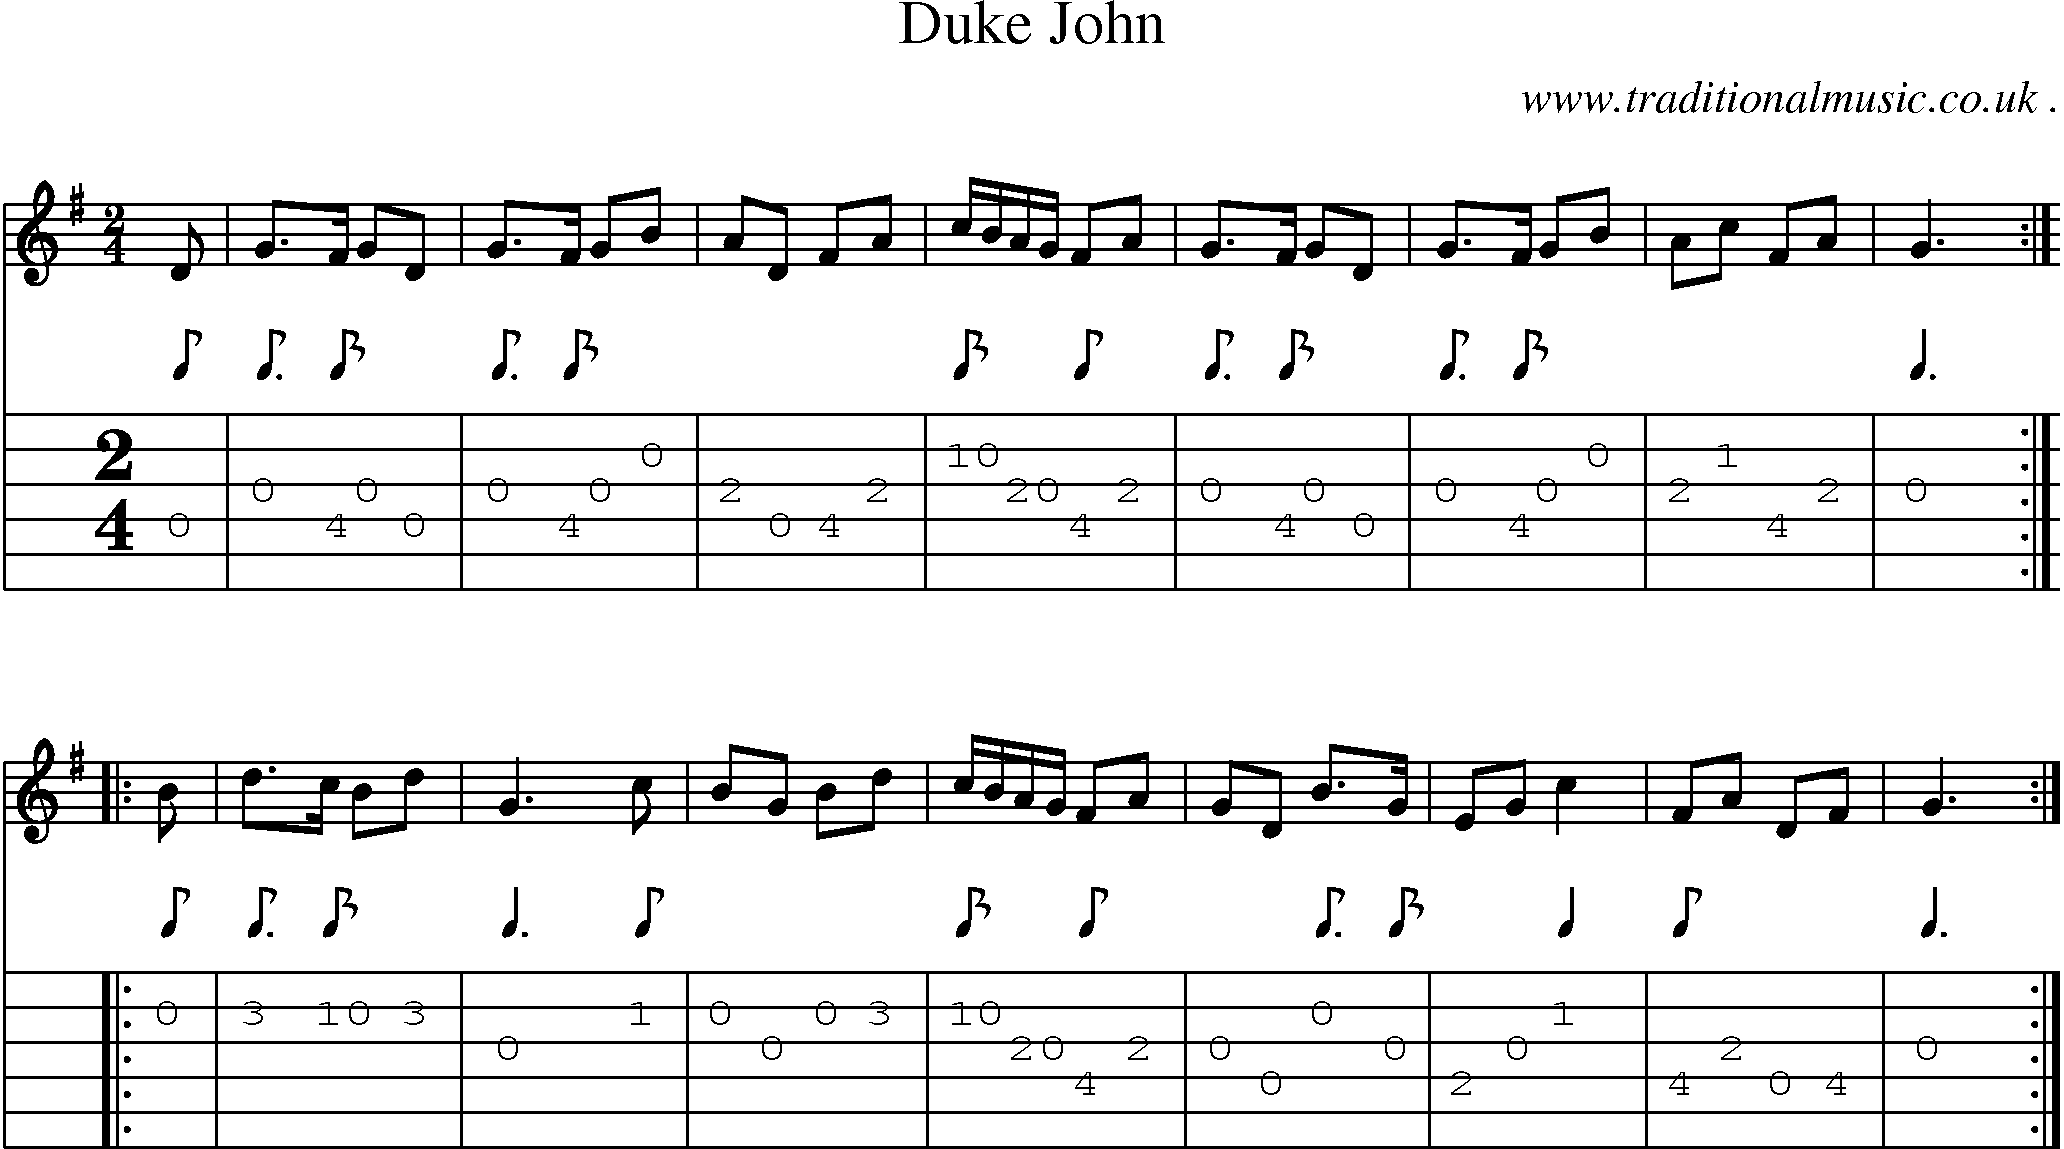 Sheet-Music and Guitar Tabs for Duke John